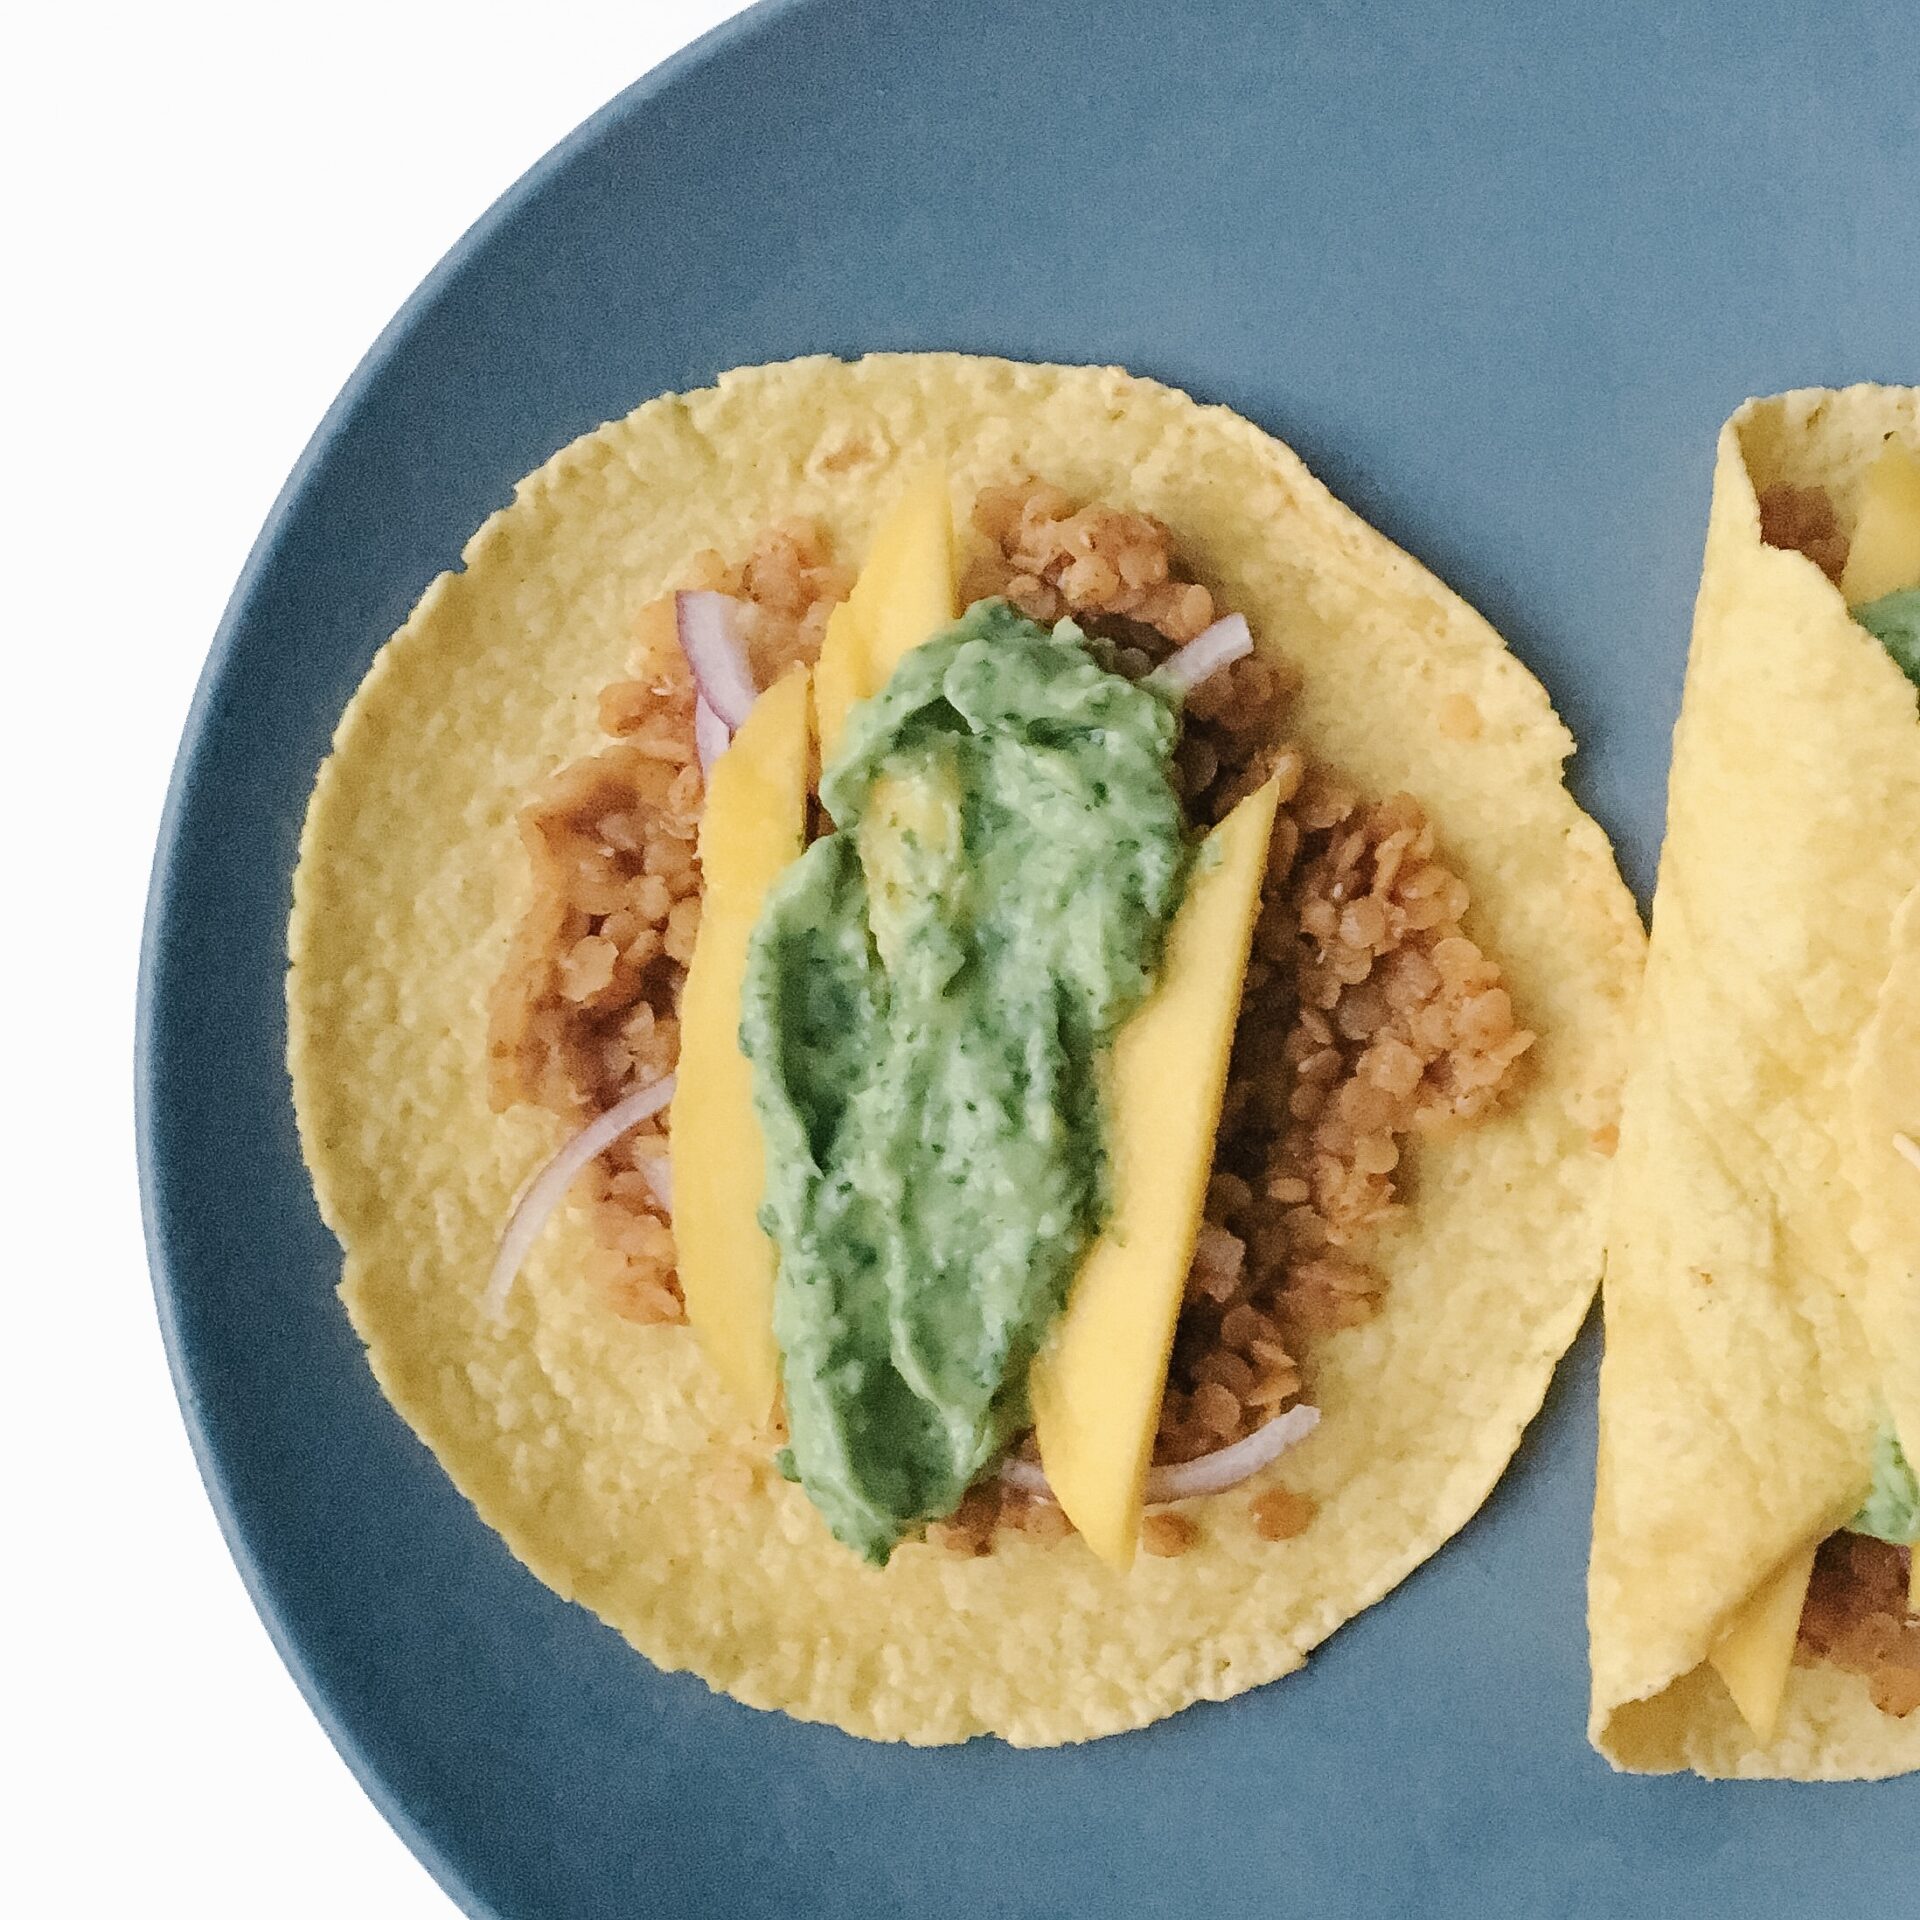 Recipe Review – Lentil Tacos with Avocado Cilantro Sauce